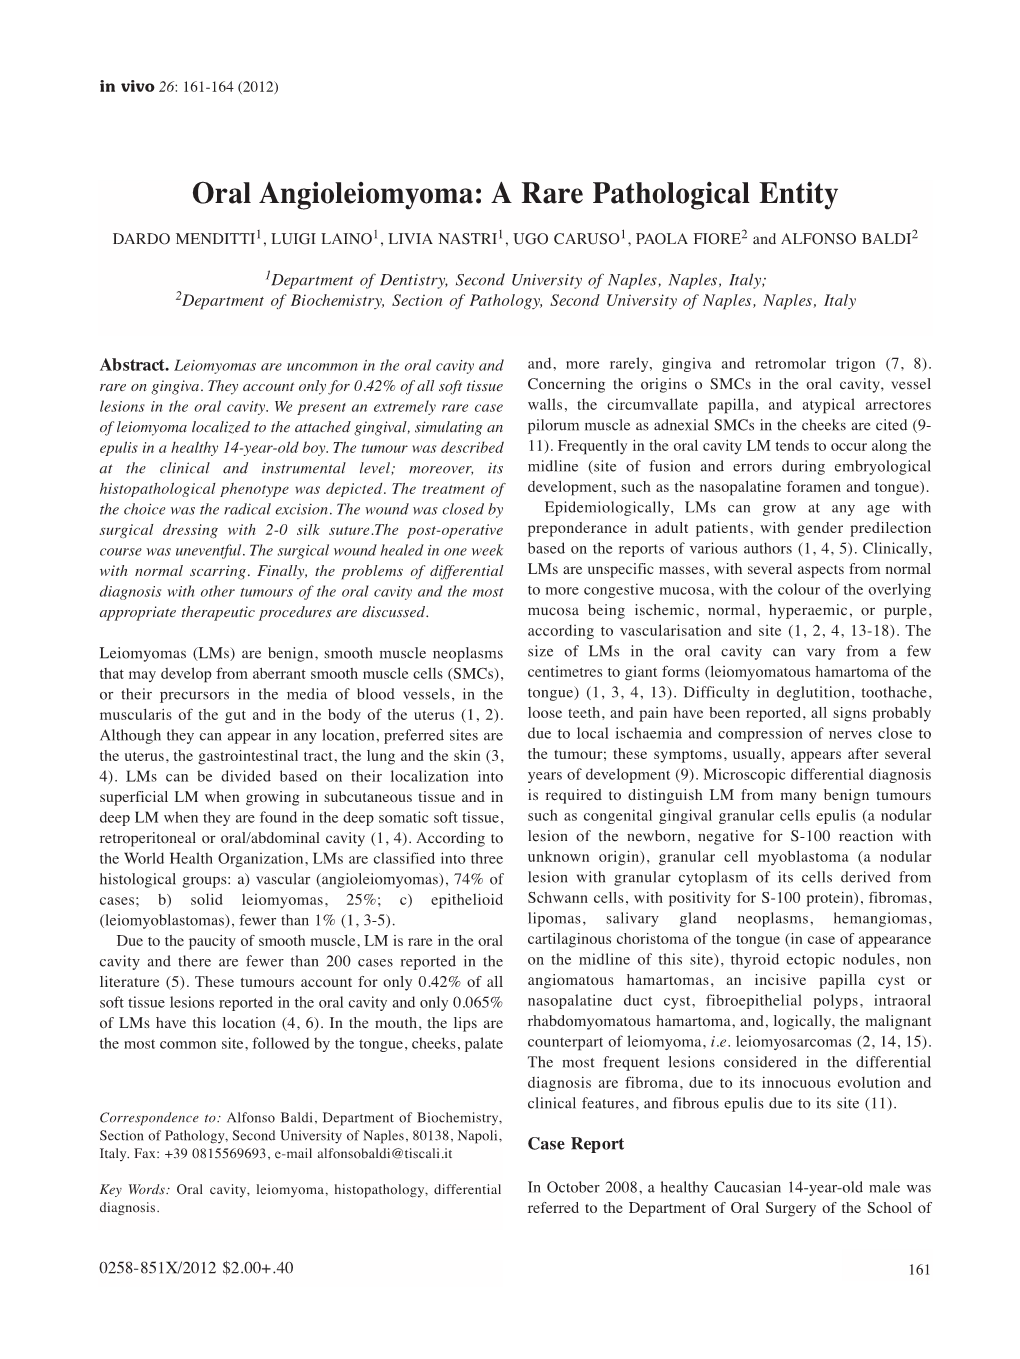 Oral Angioleiomyoma: a Rare Pathological Entity